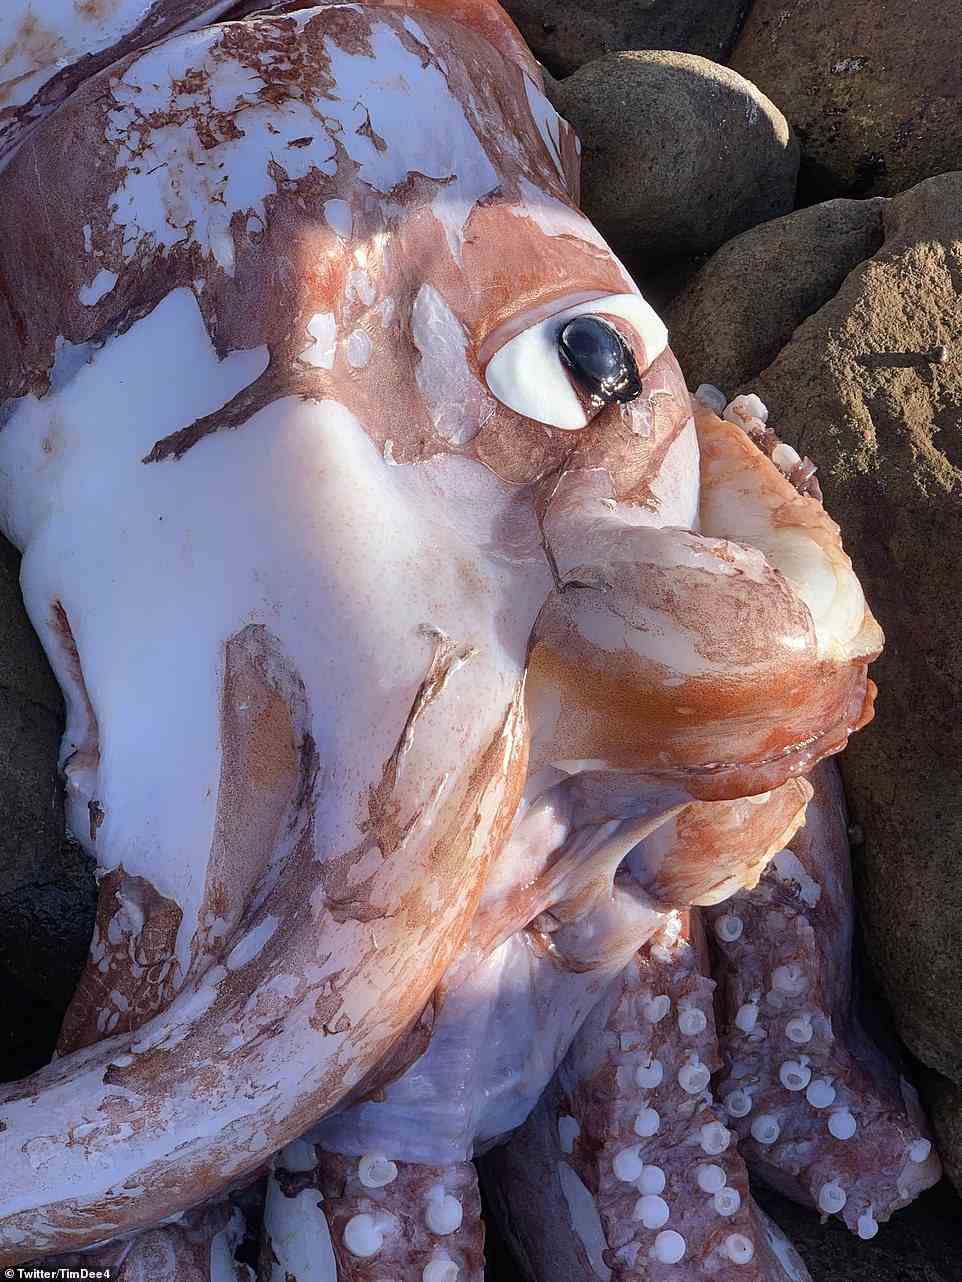 Der Twitter-Nutzer Tim Dee, der am Dienstag das seltsam aussehende Meerestier (oben) am Strand von Scarborough fand, hat online Fotos und Videos geteilt, die das riesige Auge des farbenfrohen Tintenfischs zeigen